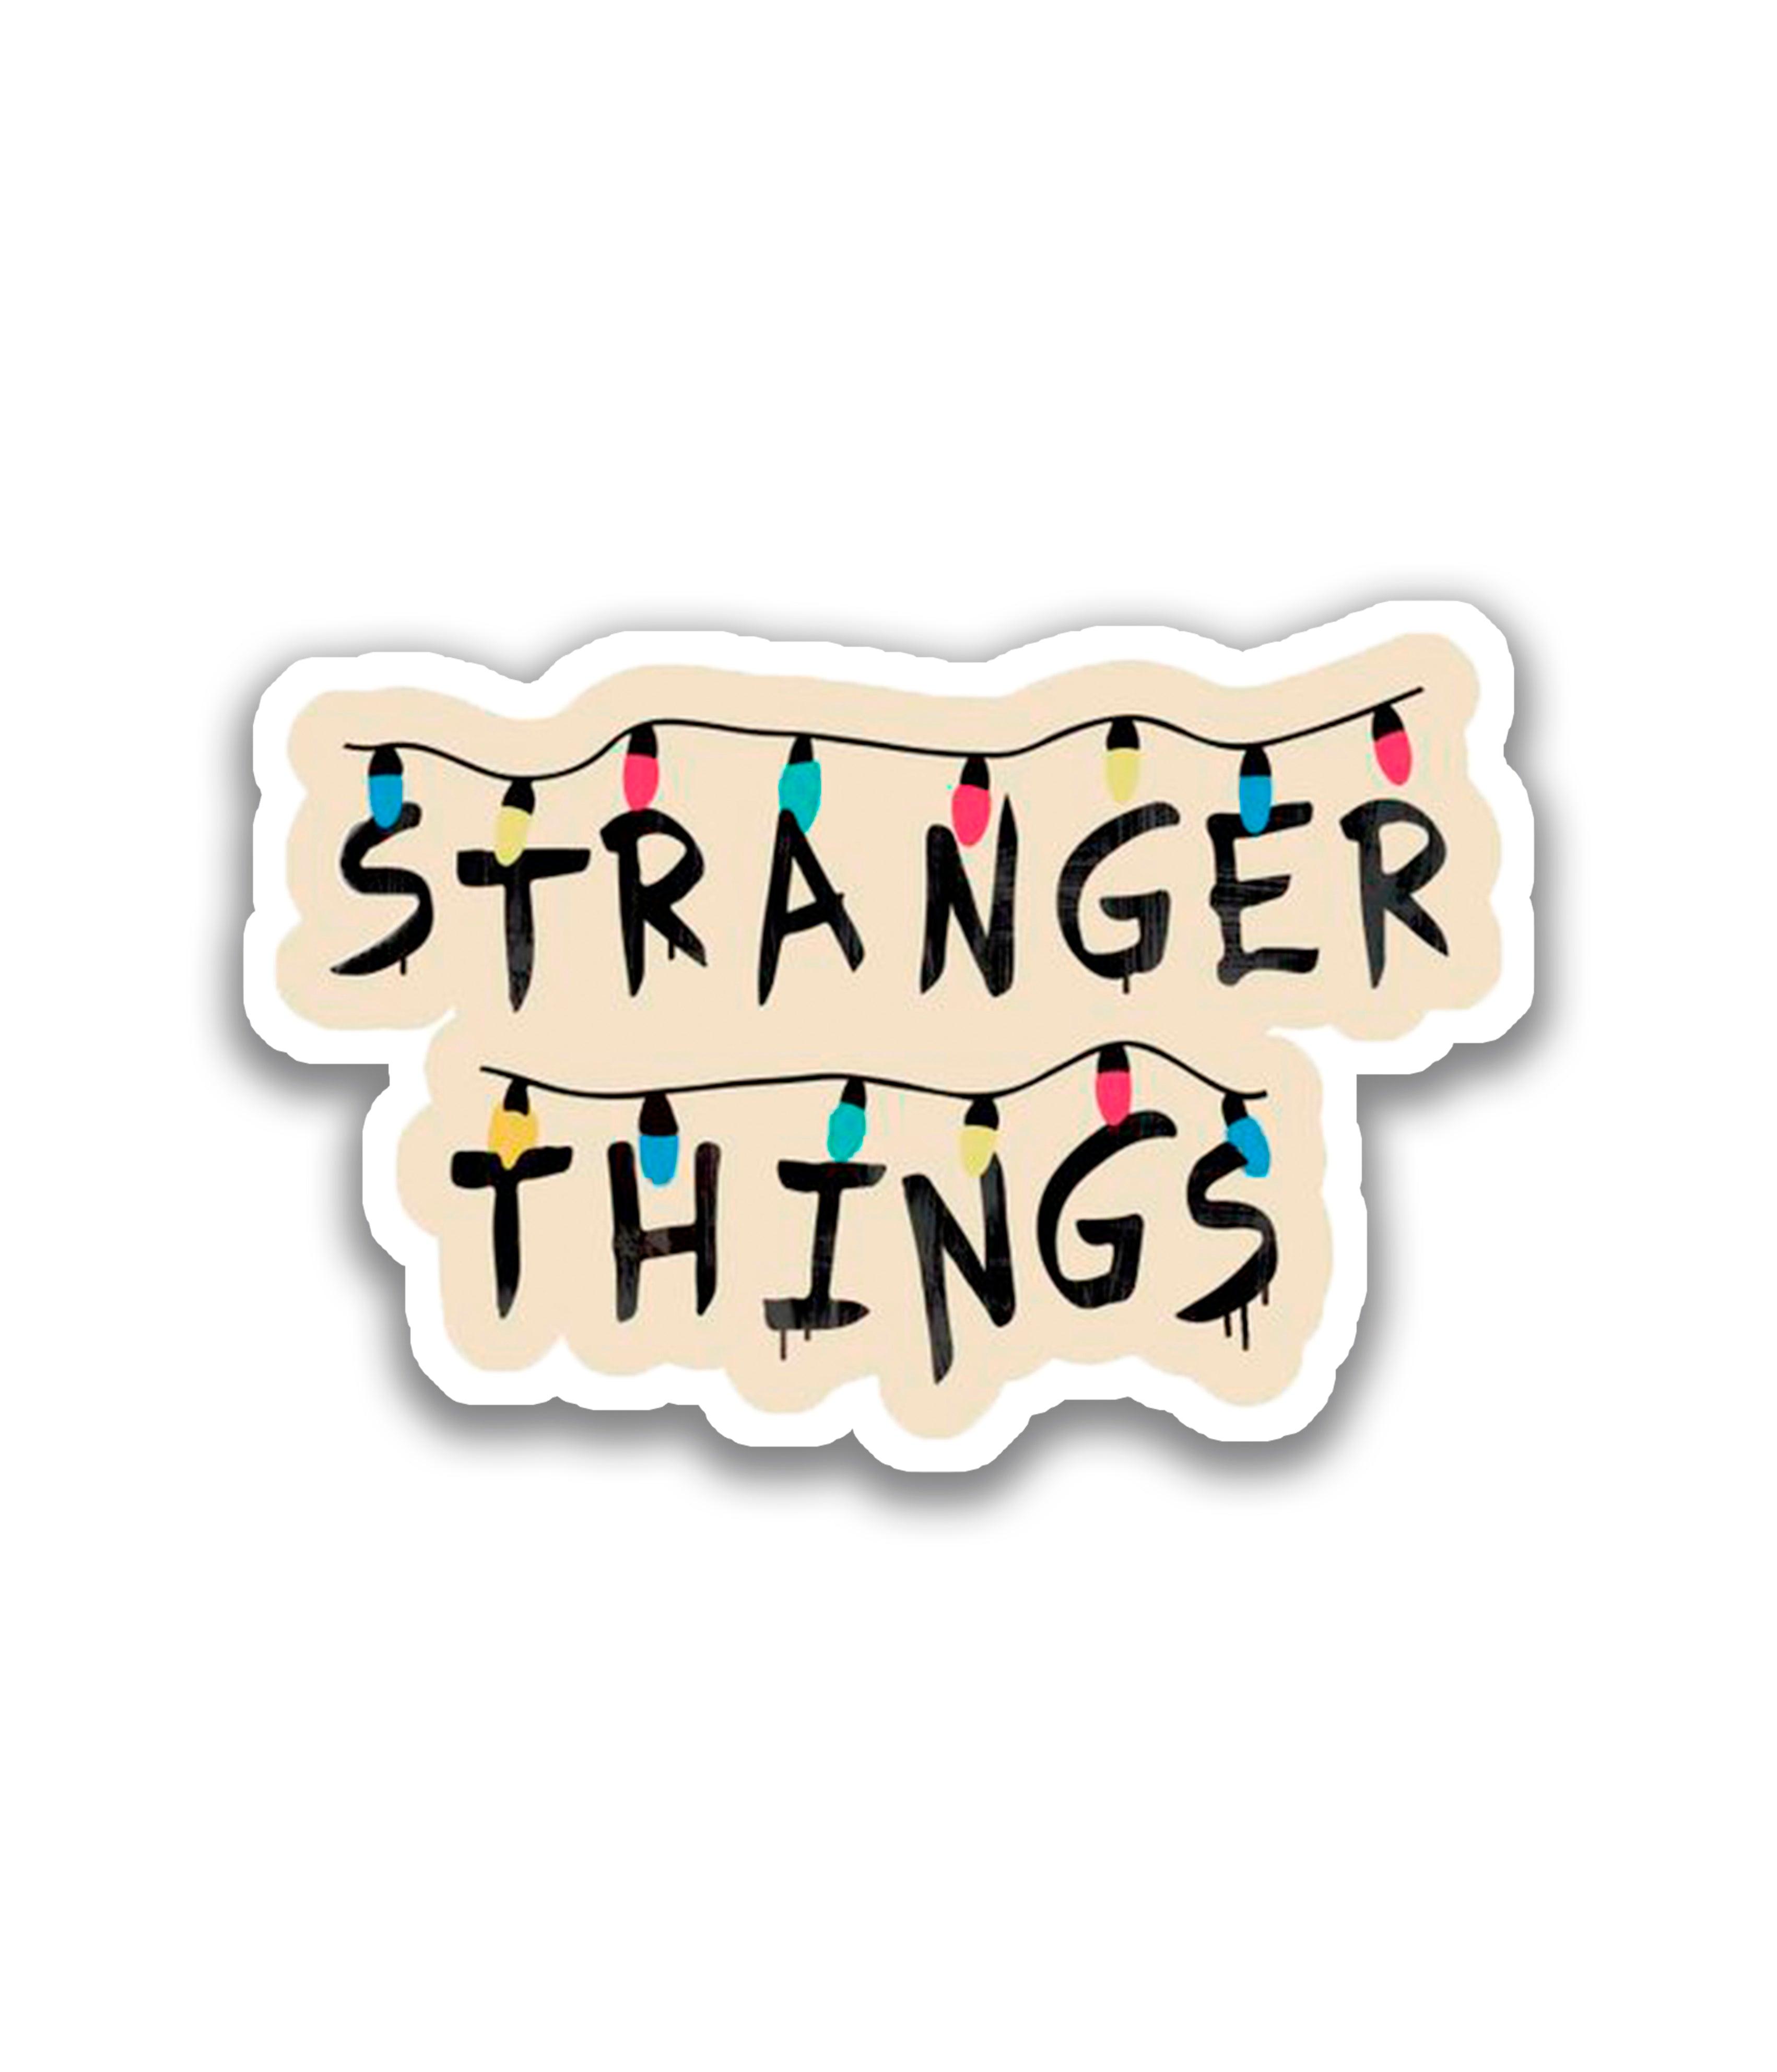 Stranger things - Rei do Sticker